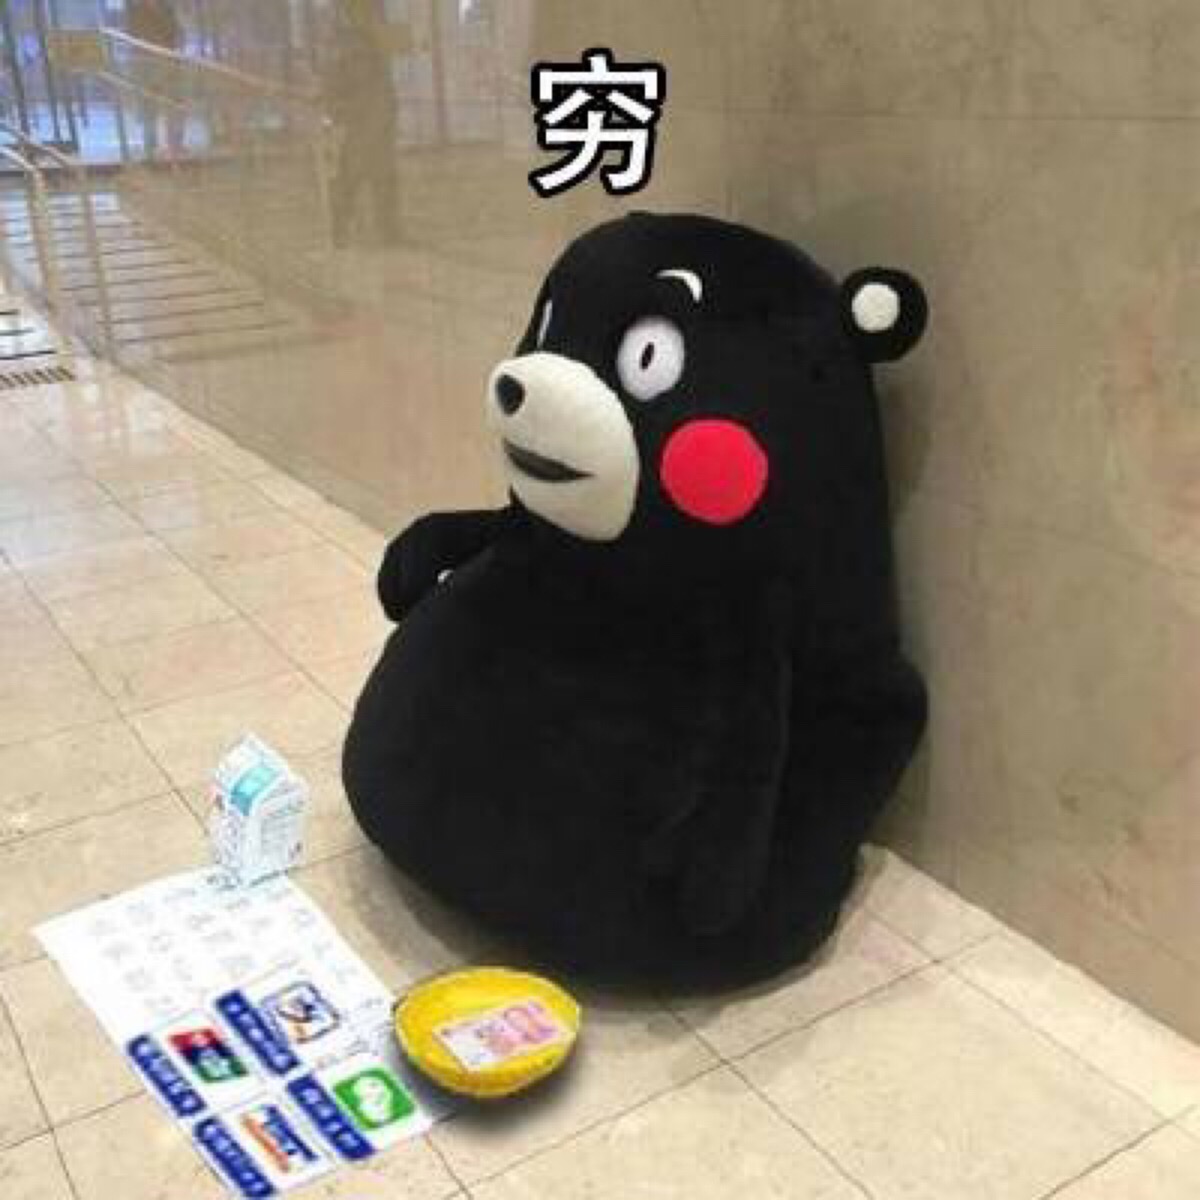 熊本熊官方中文换名 从“酷MA萌”改成“熊本熊”|观察者网|熊本熊|熊本县_新浪新闻